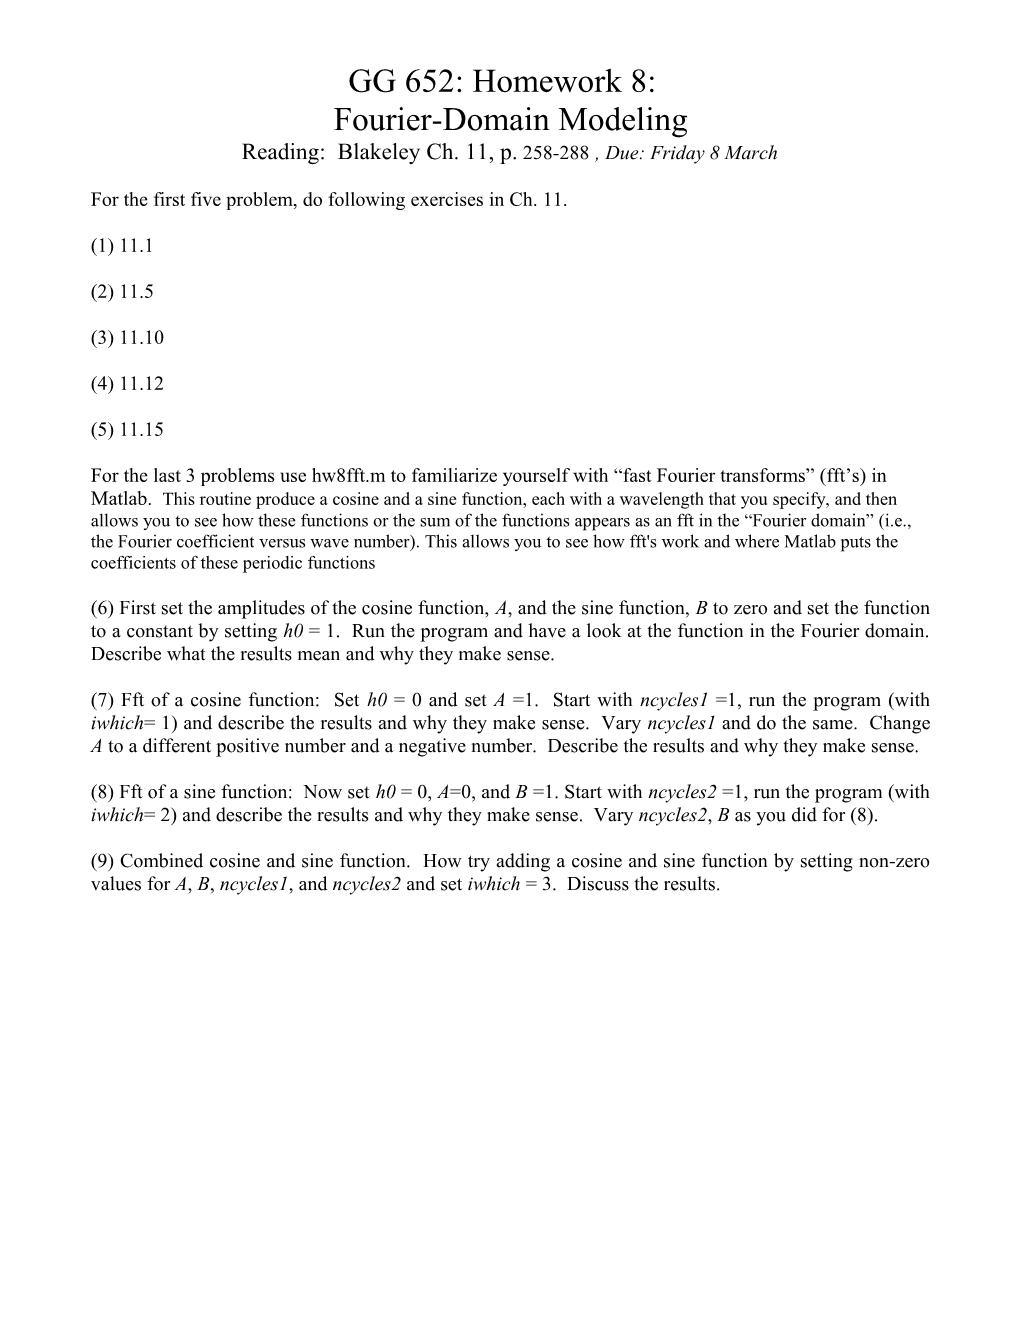 GG 652: Homework 8: Fourier-Domain Modeling